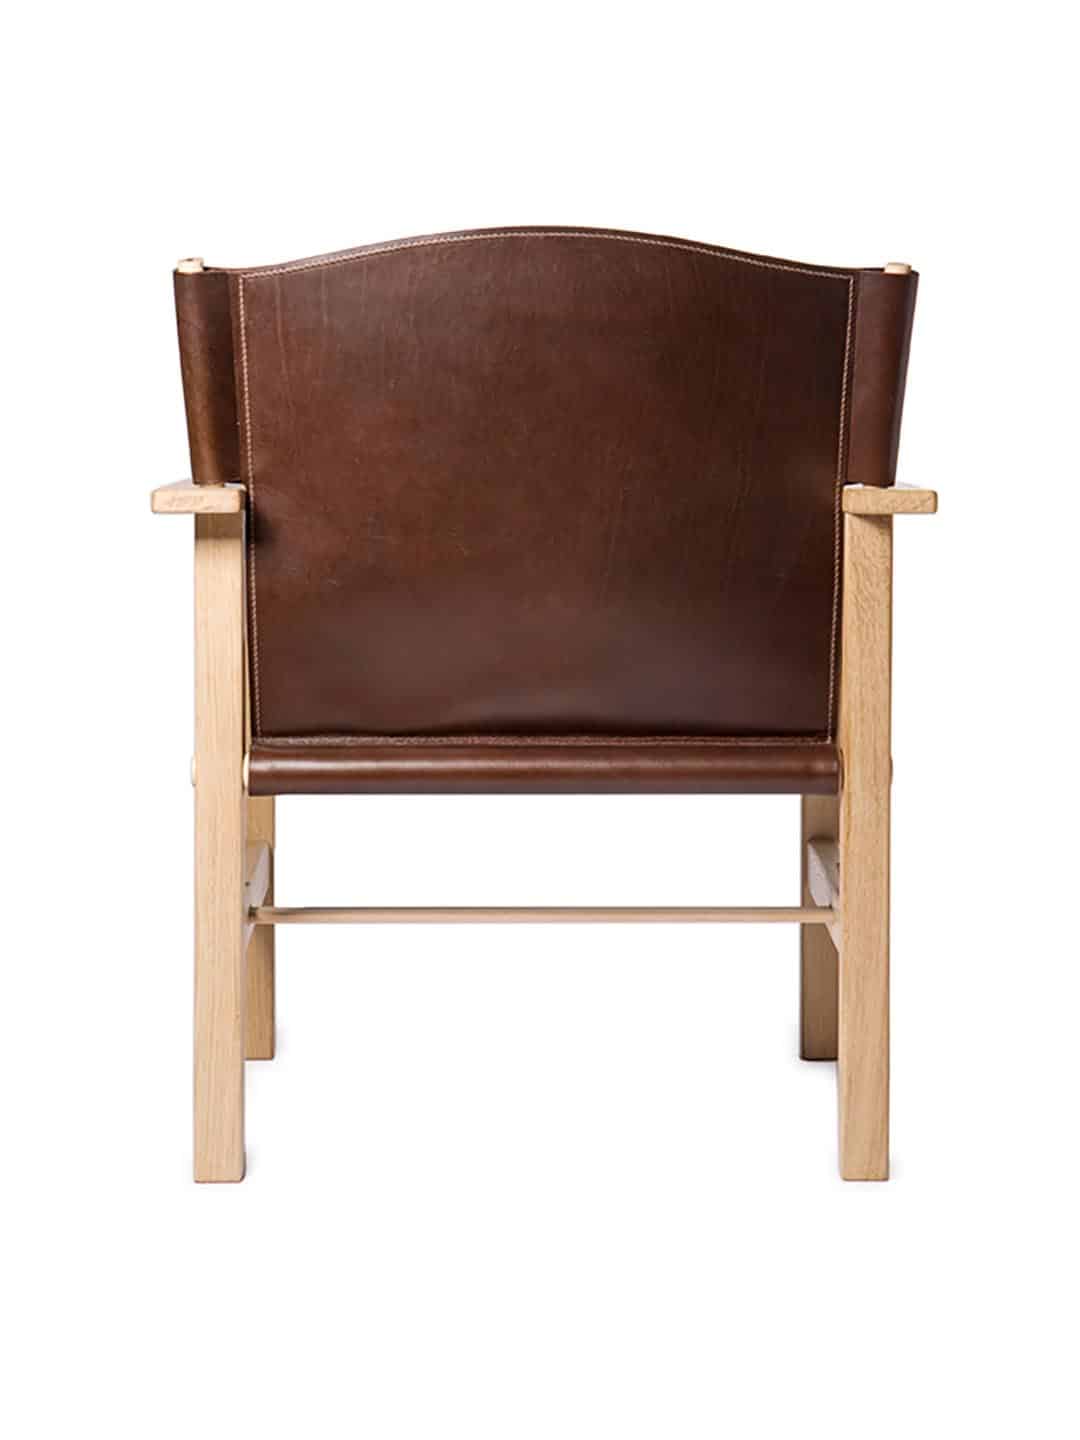 Кресло Garsnas Ferdinand премиум класса из натуральной древесины